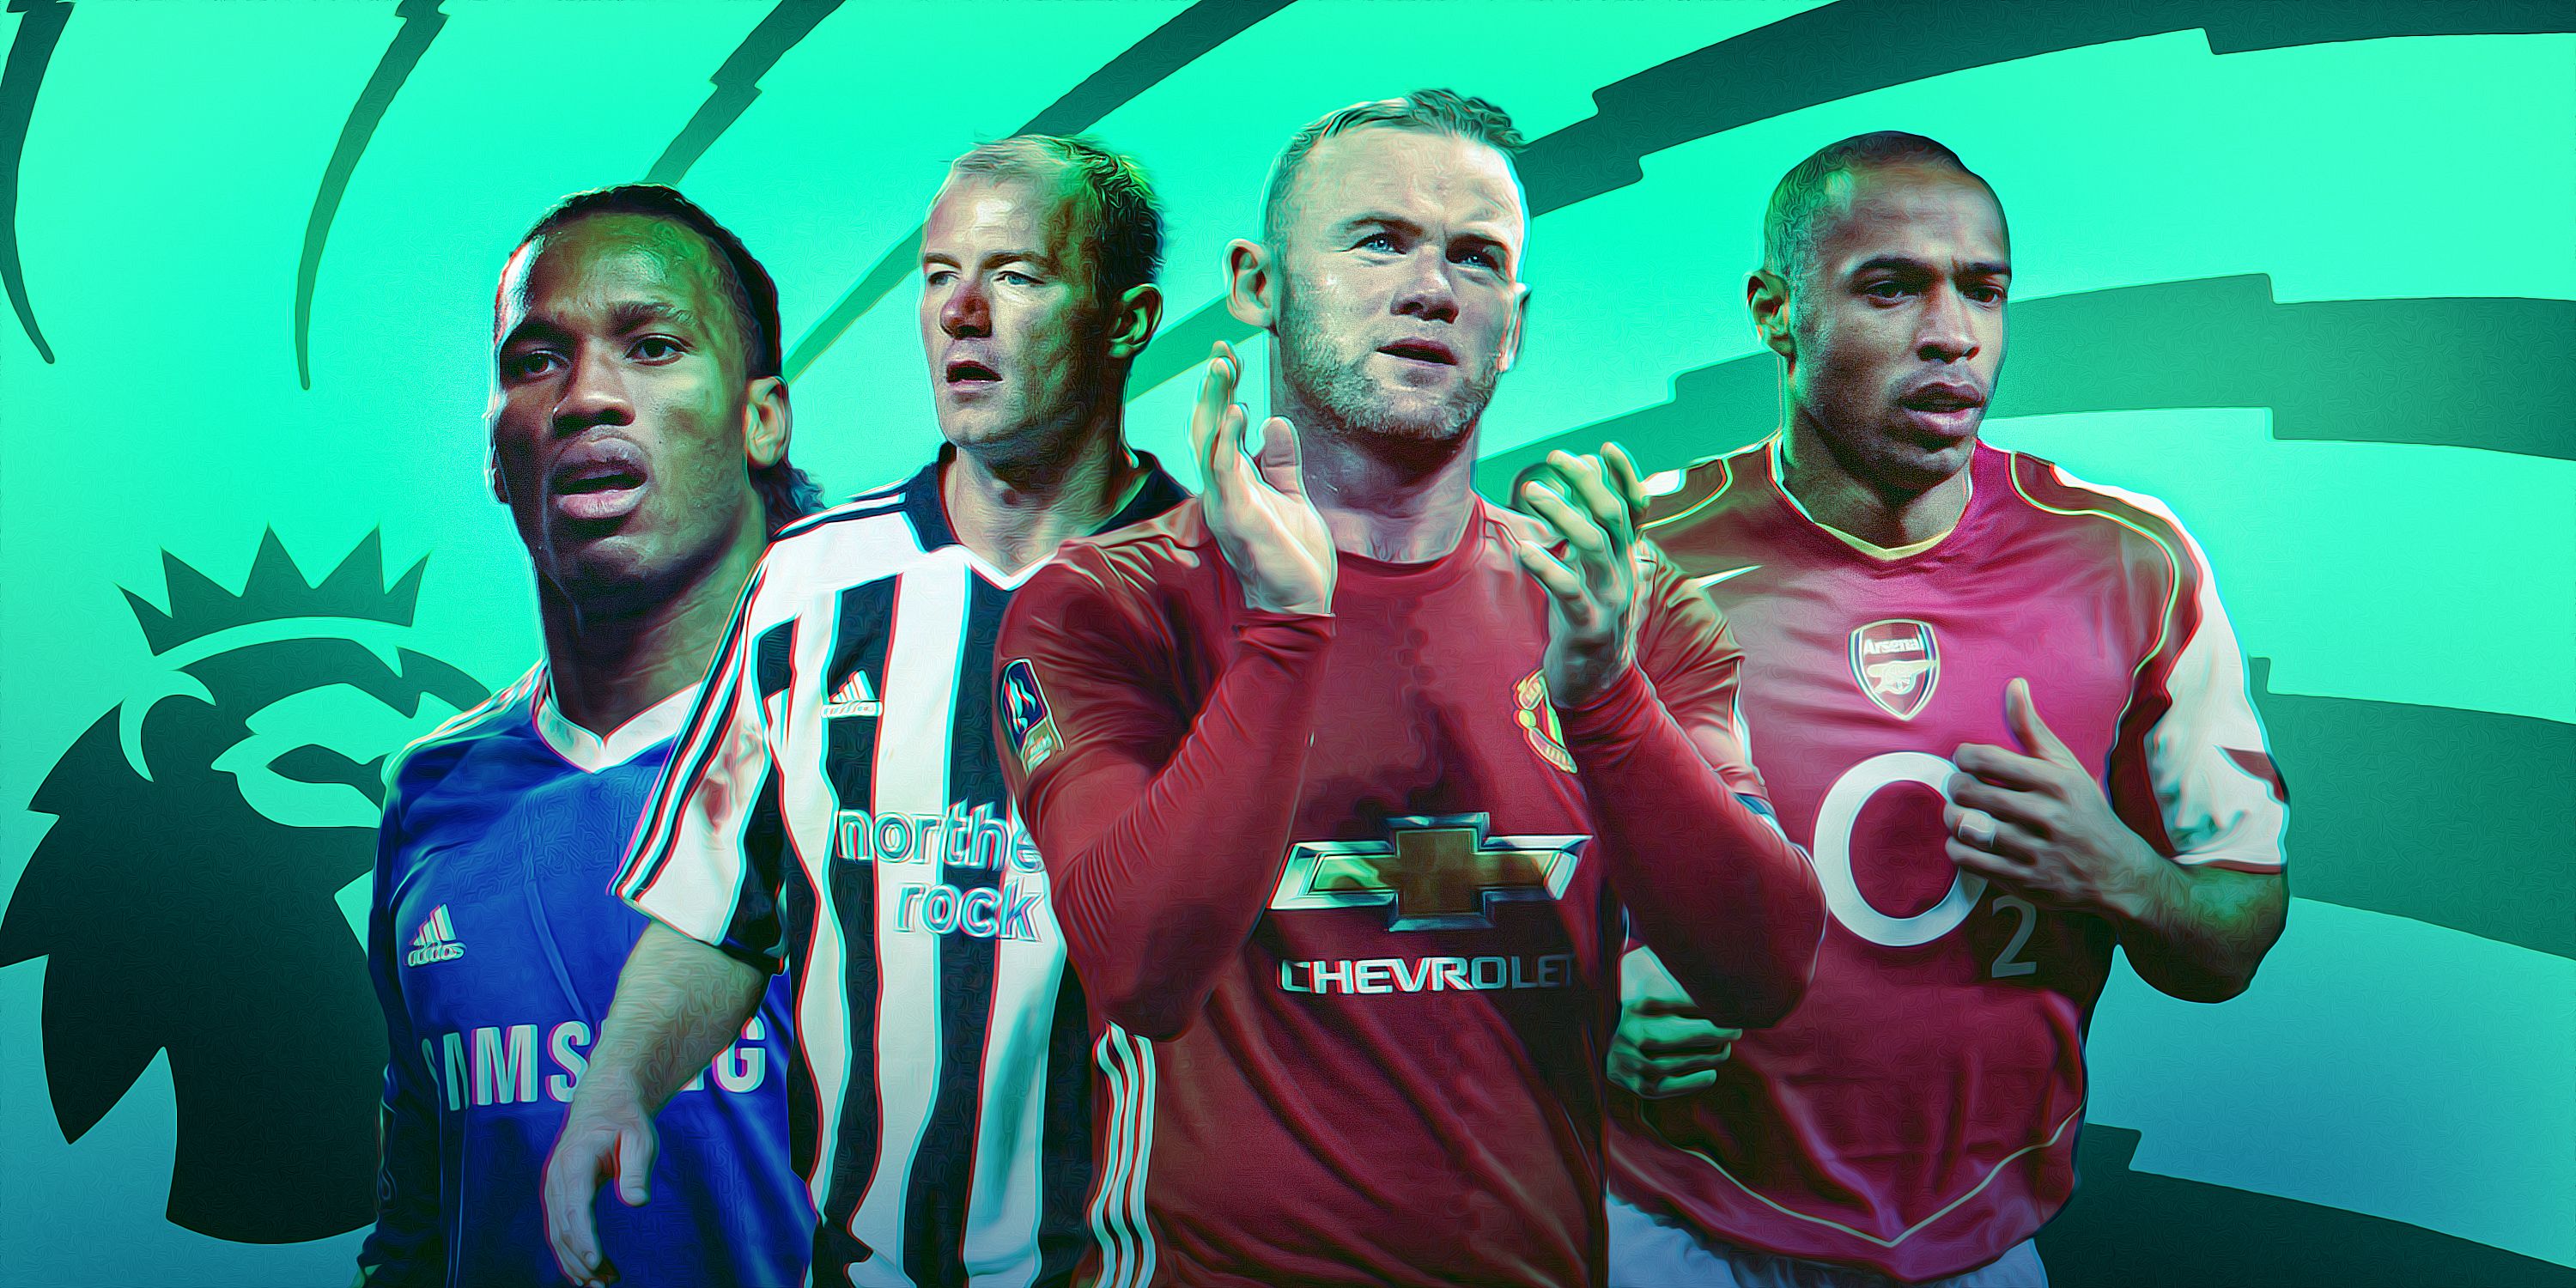 15 greatest strikers in Premier League history